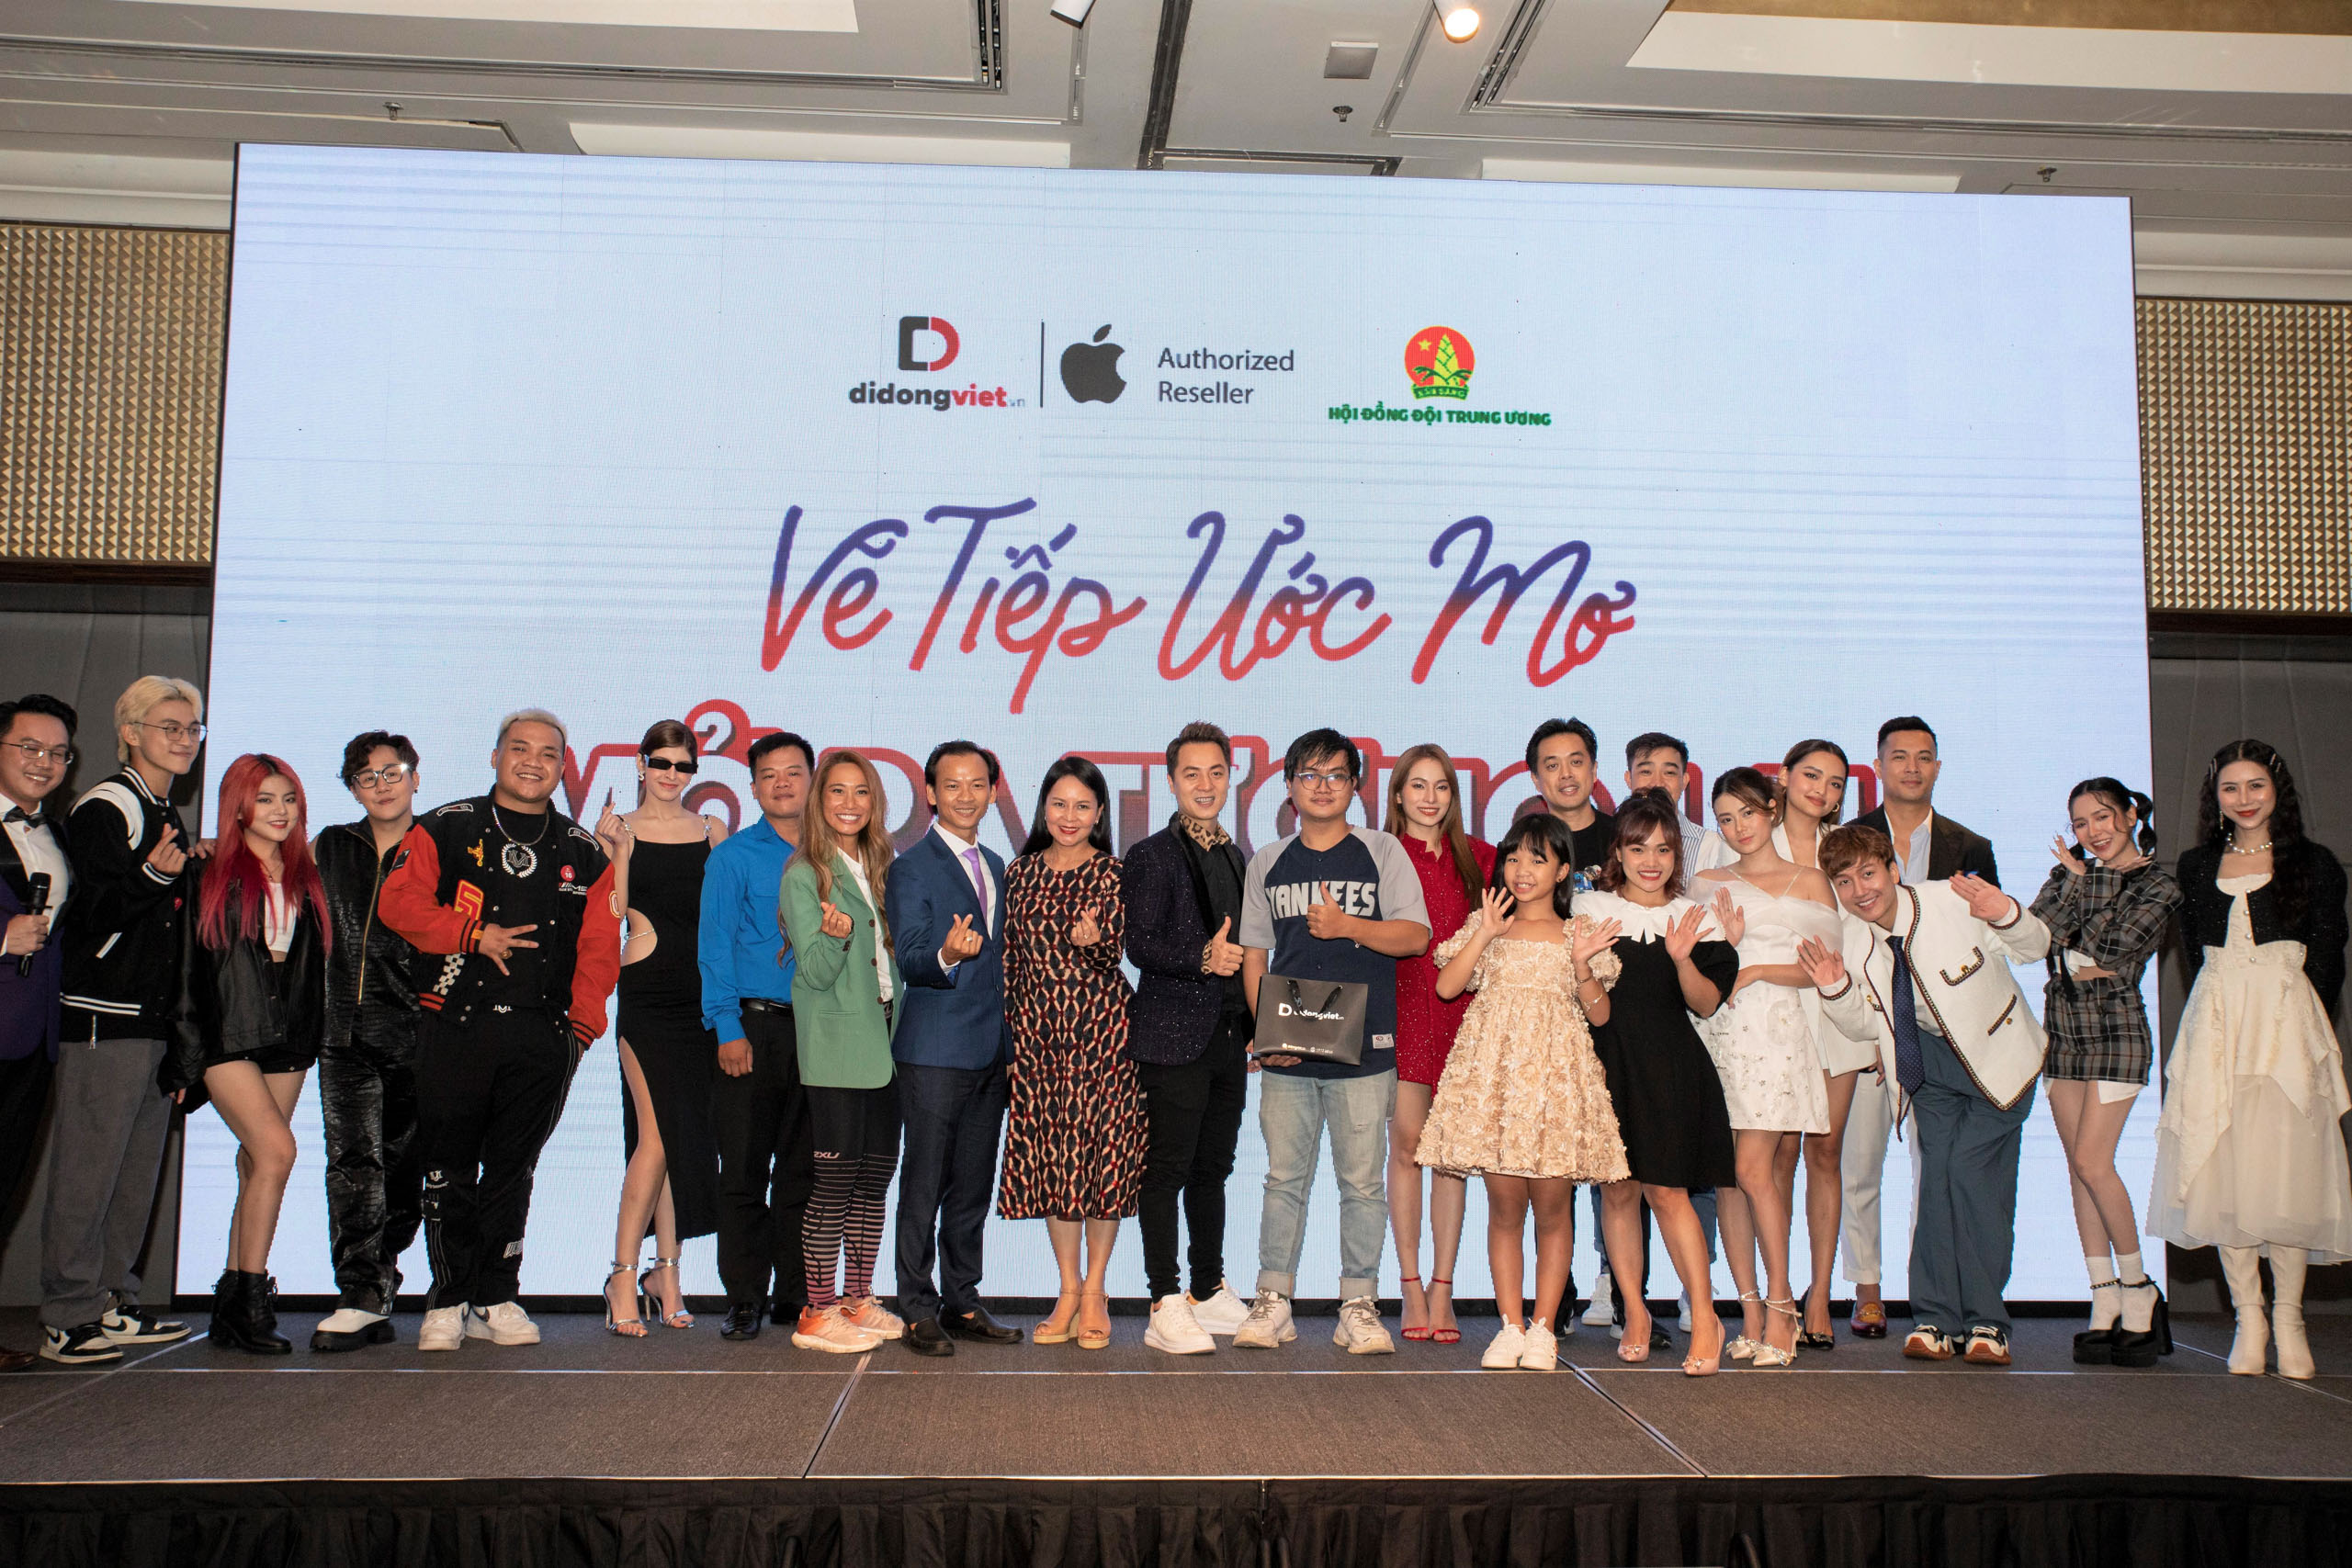 Di Động Việt tổ chức sự kiện "Vẽ tiếp ước mơ, mở ra tương lai", mở bán iPhone 14, giúp đỡ bệnh nhi nghèo